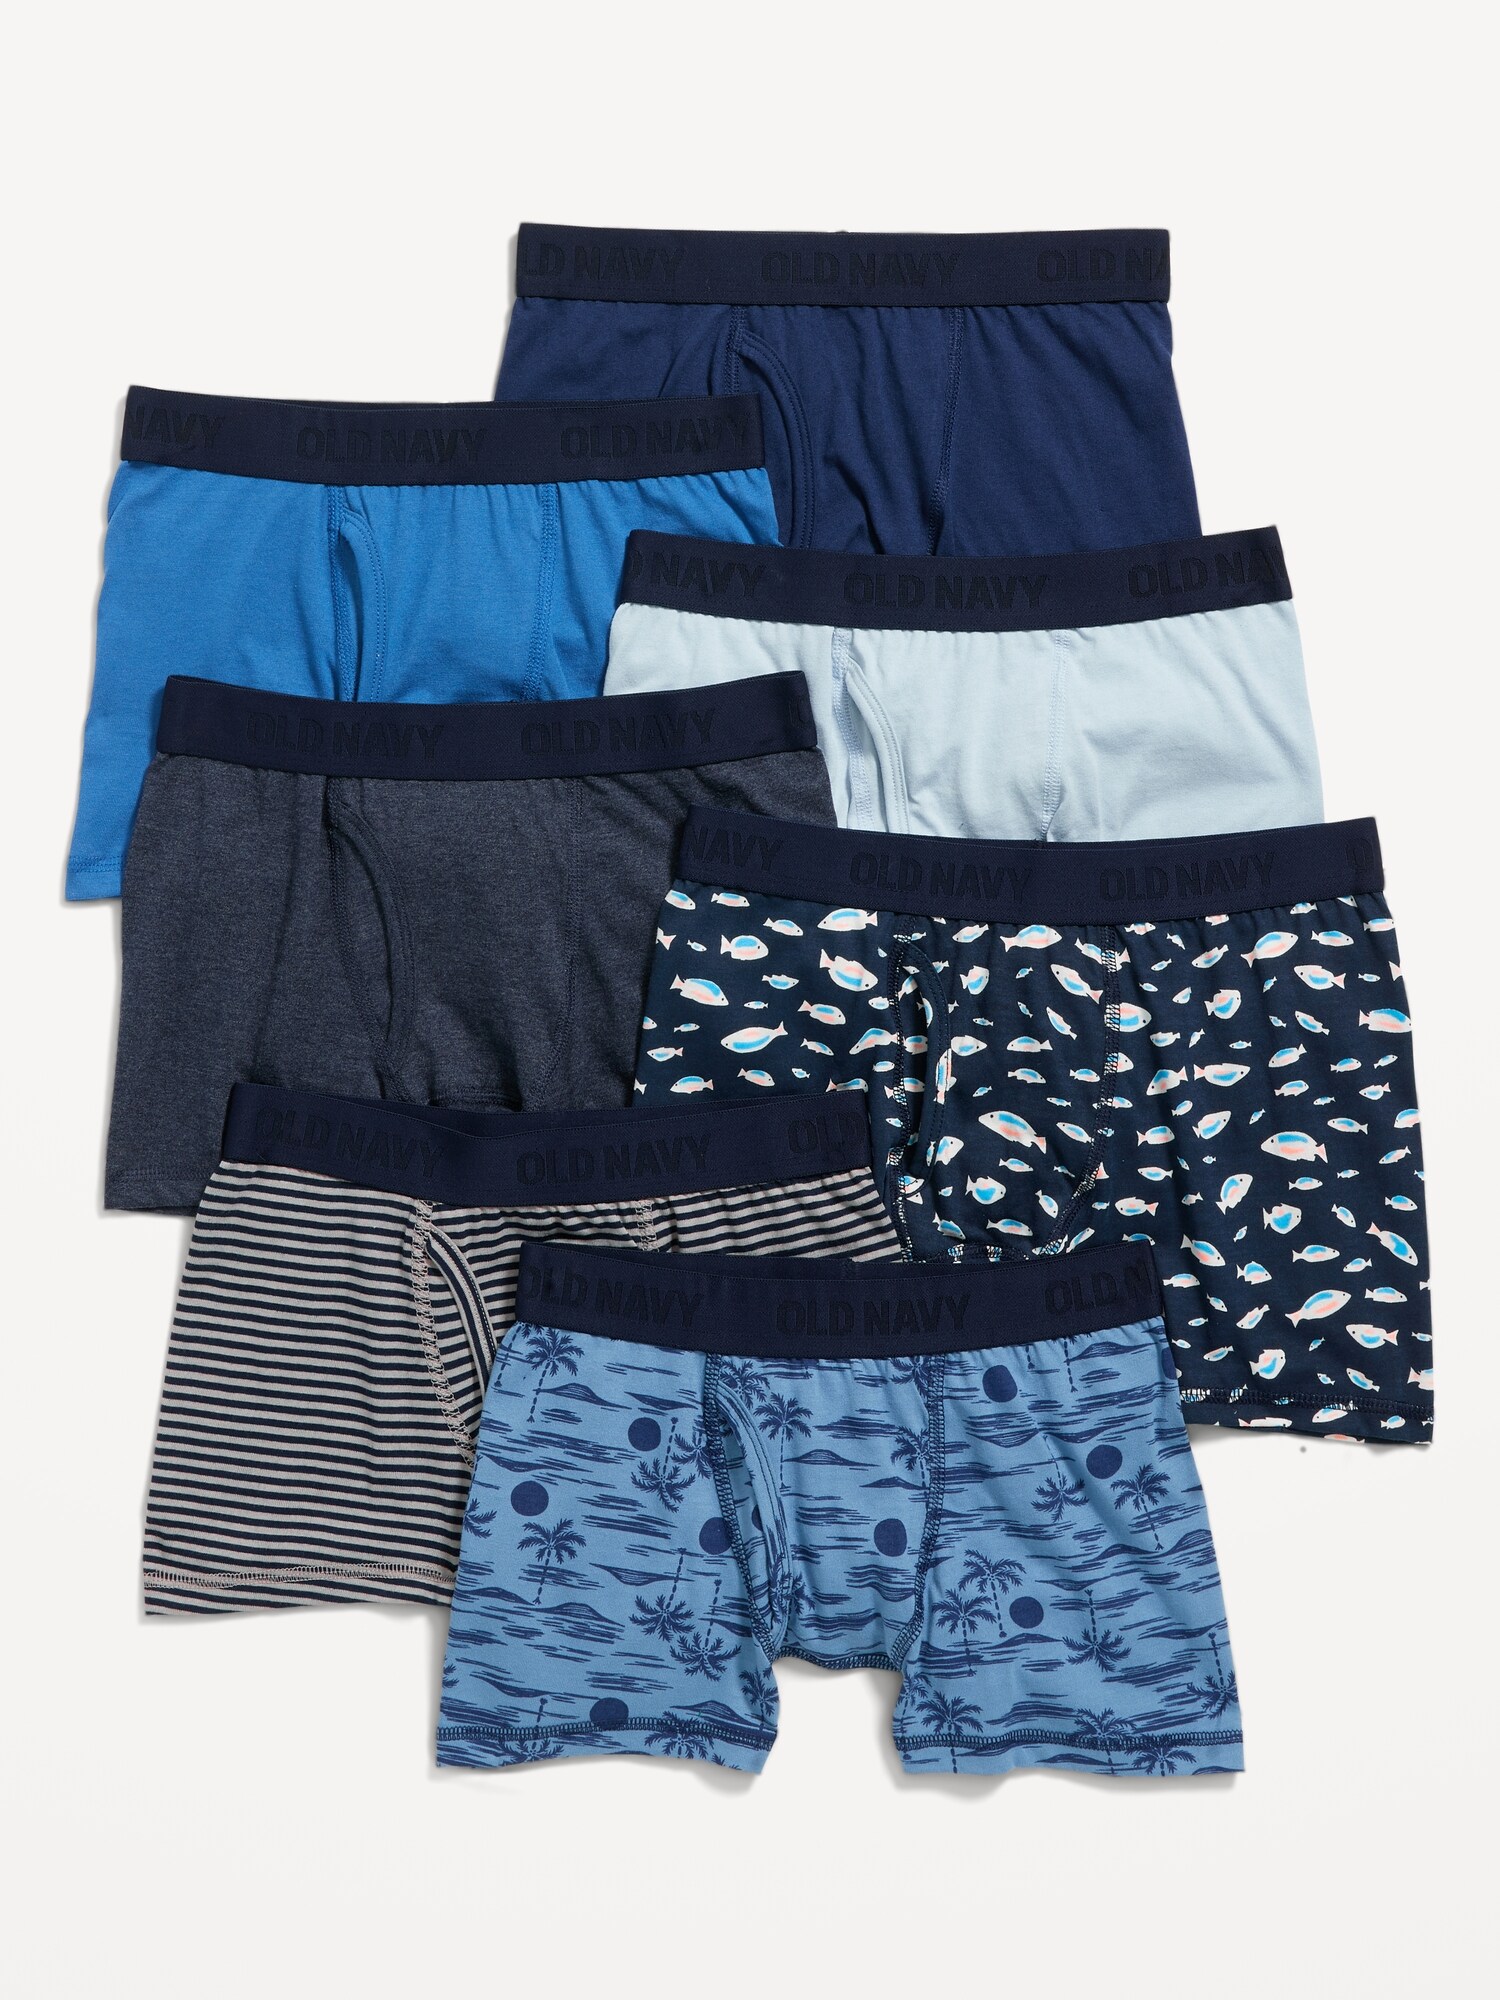 Old Navy Underwear Briefs Variety 7-Pack for Boys white - 407404012